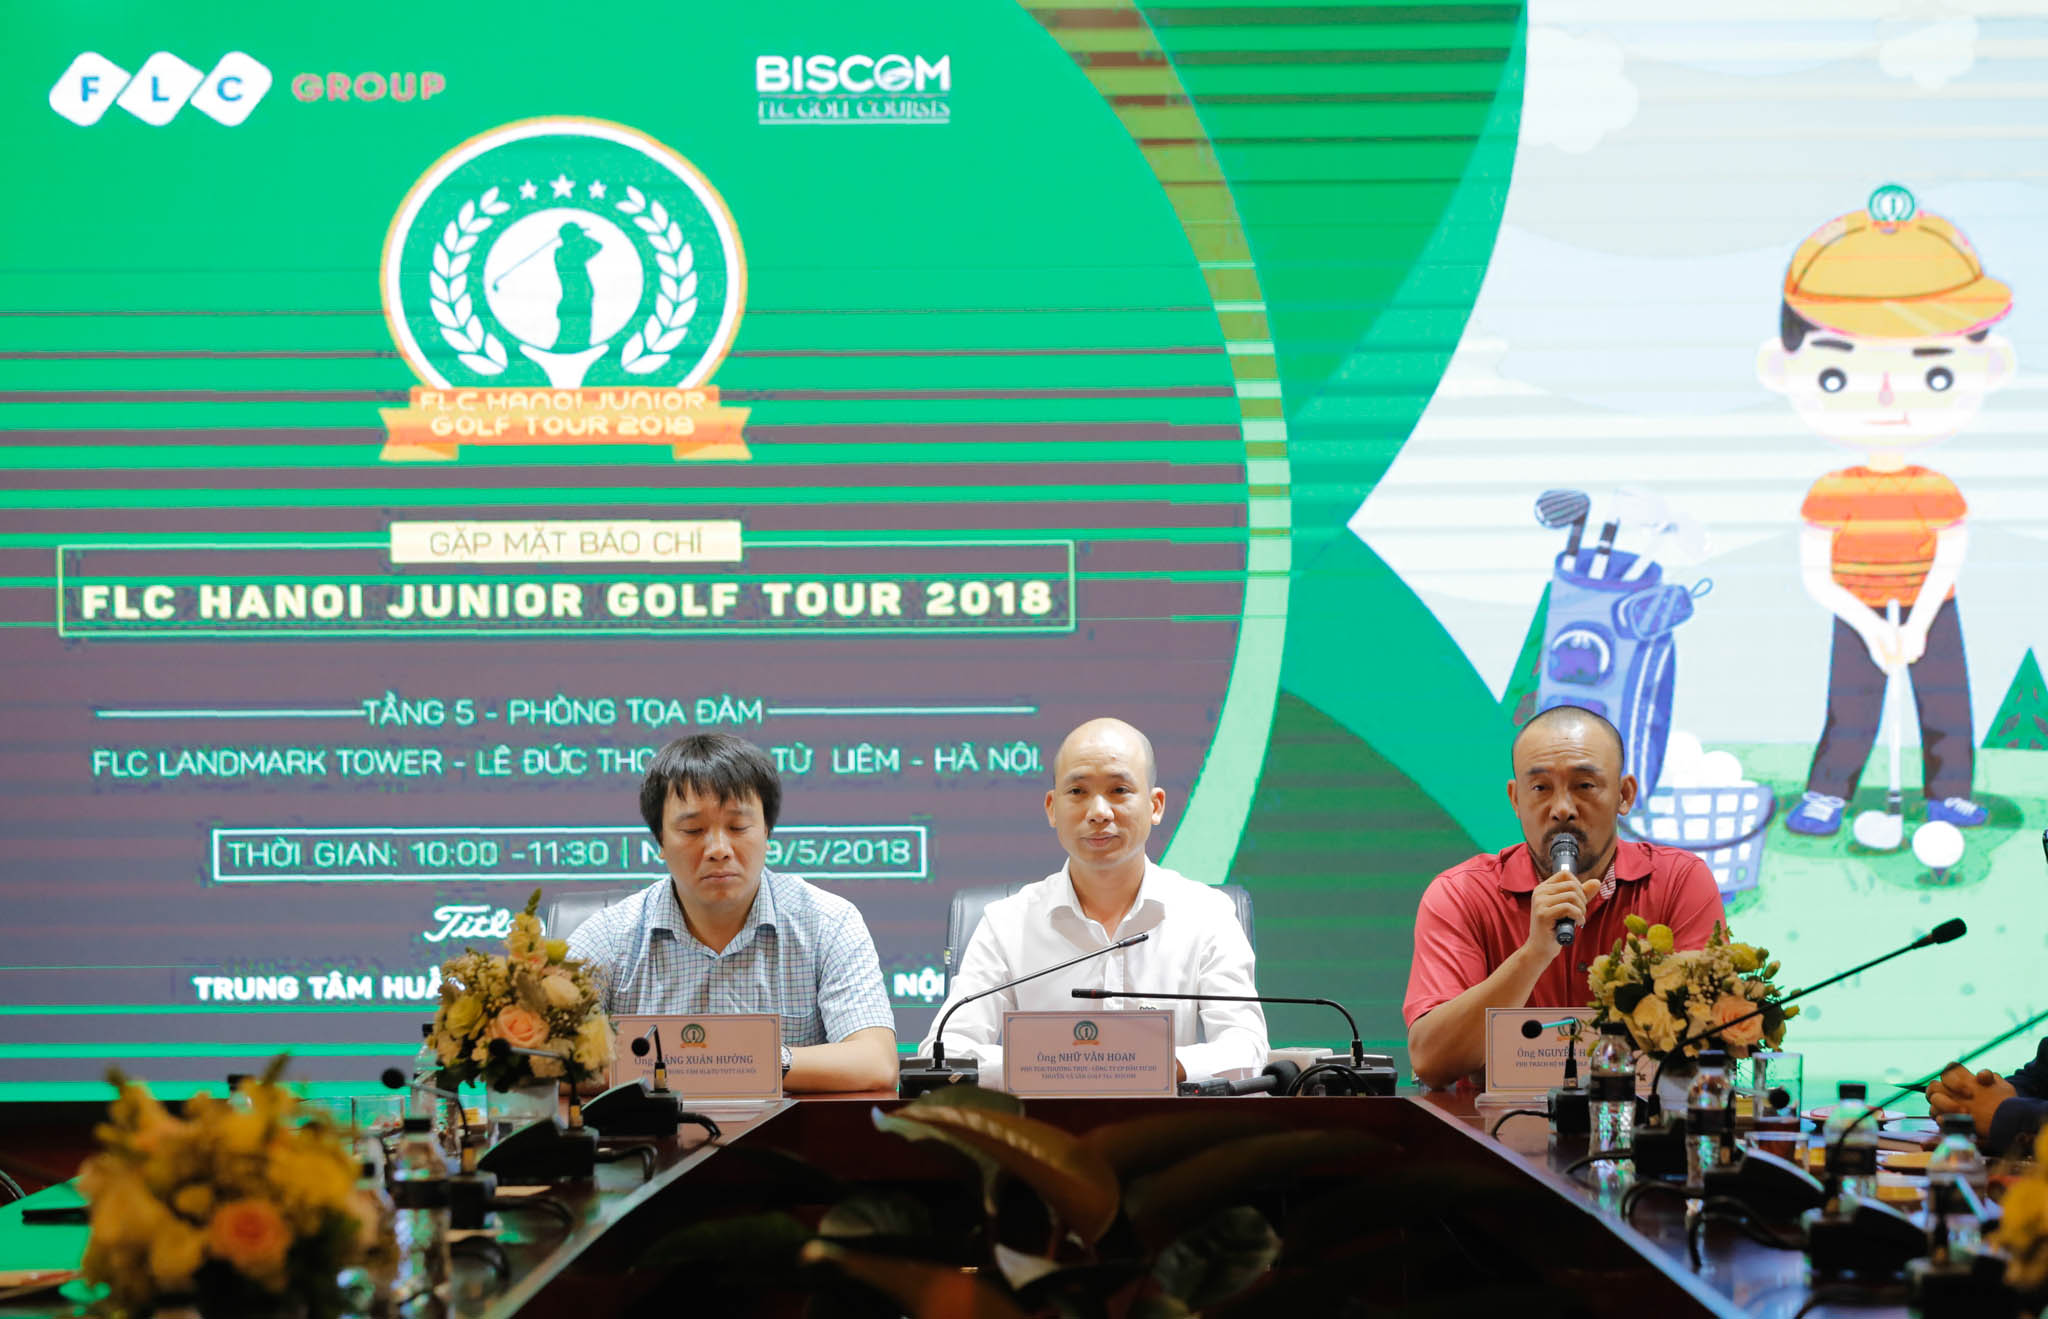 Chính thức khởi động giải golf trẻ - FLC HANOI JUNIOR GOLF TOUR 2018